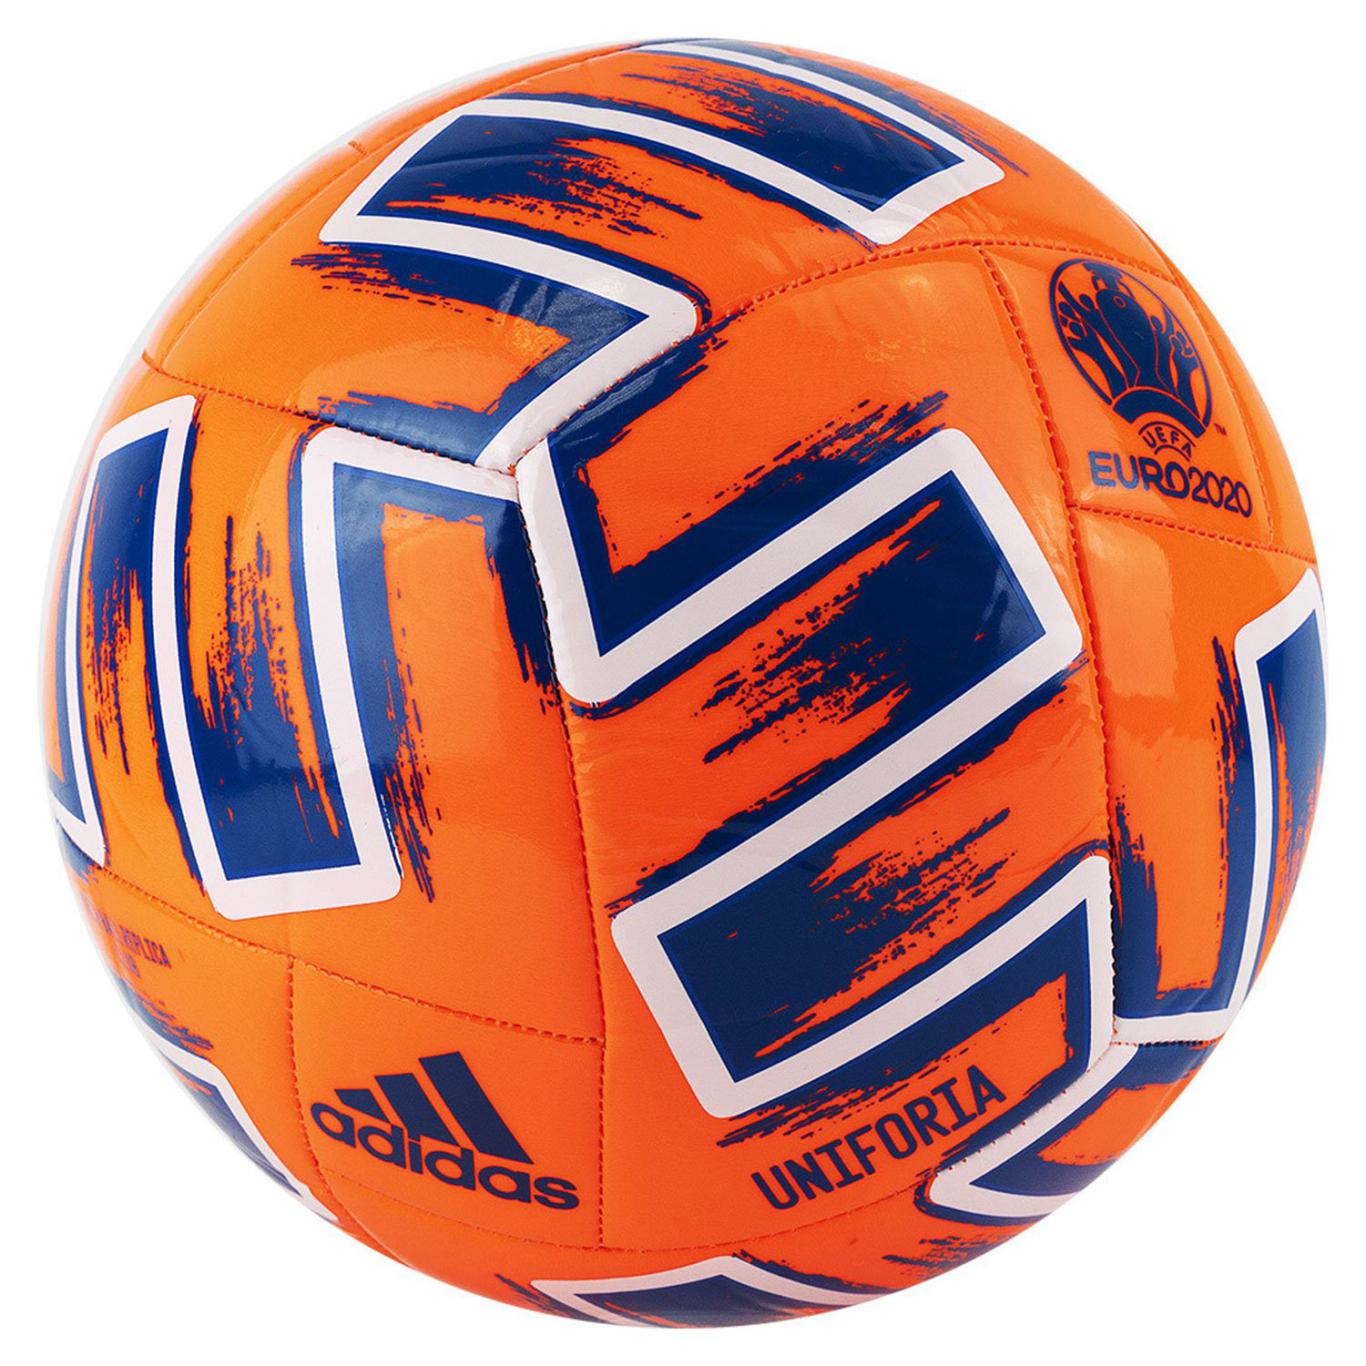 Мяч футбольный Adidas euro 2020 Uniforia FP9705 1